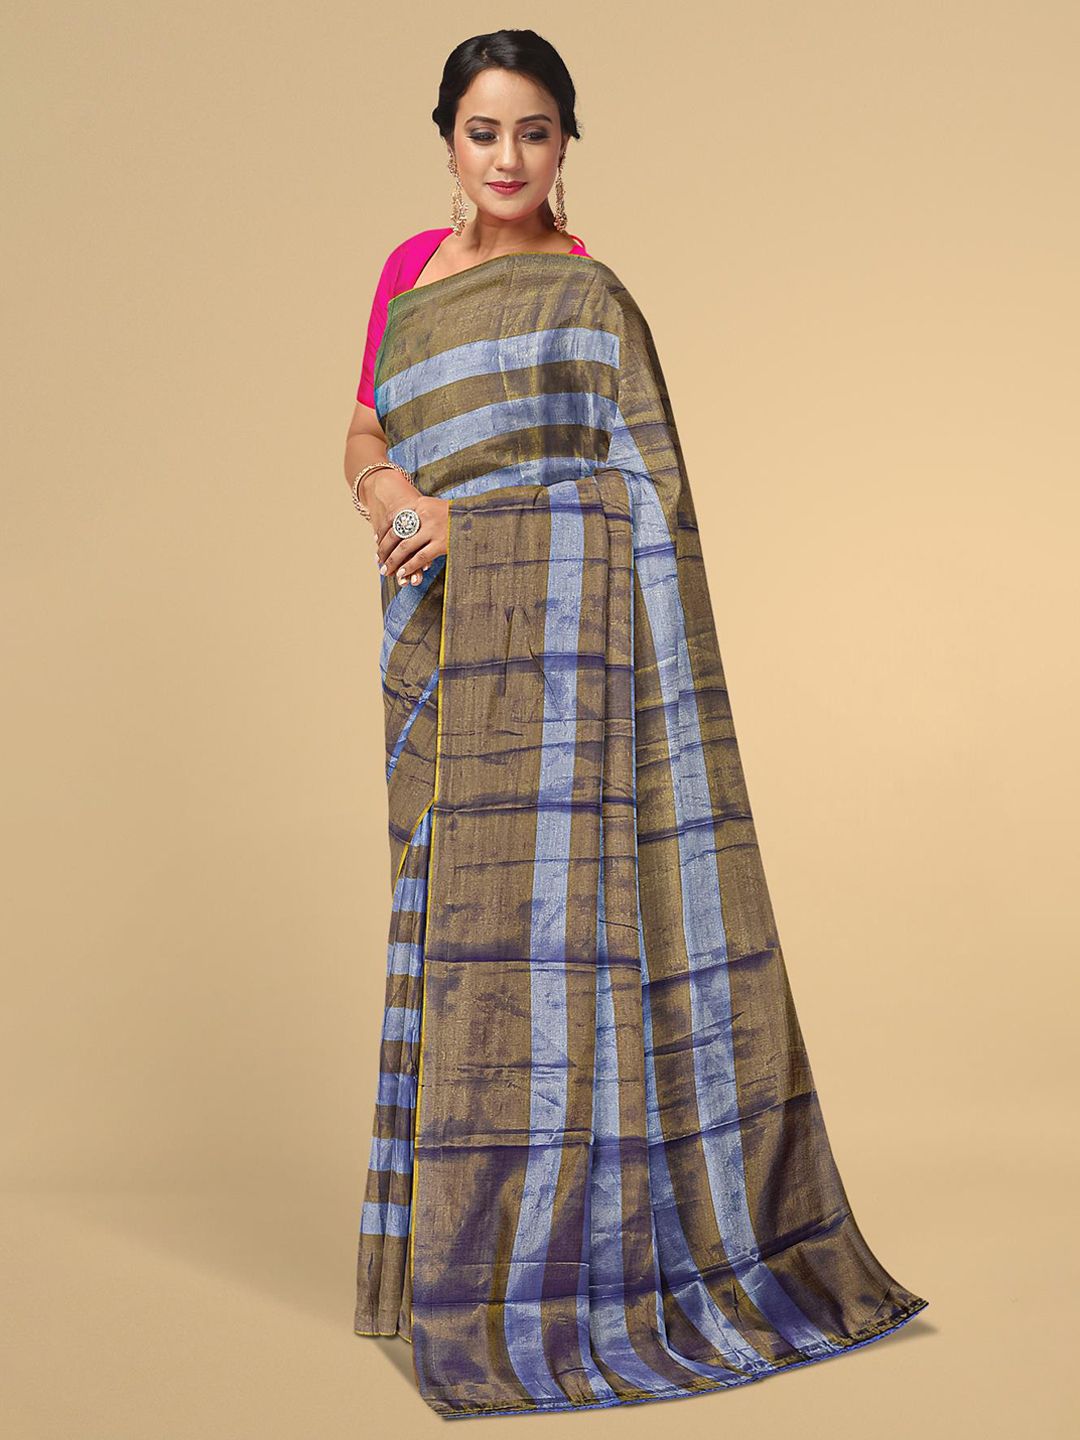 Kalamandir Women Violet & Bronze-Toned Striped Tissue Saree Price in India